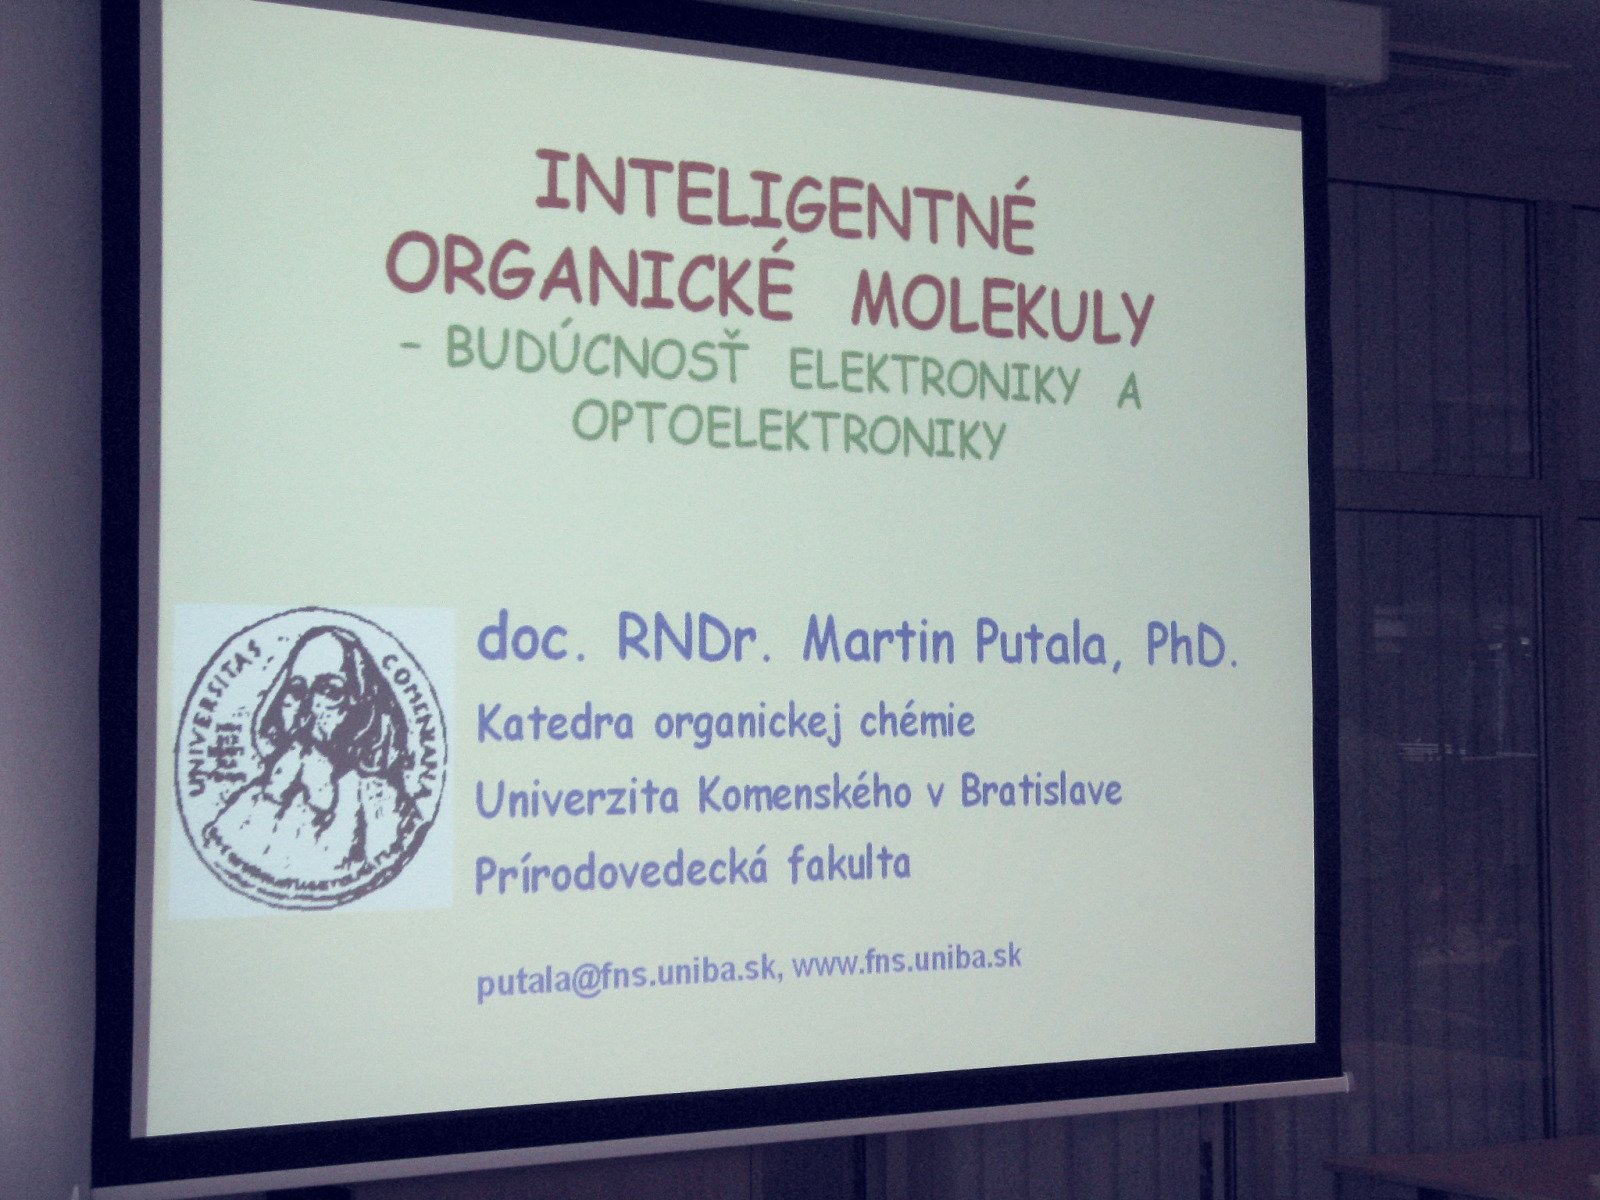 Inteligentné organické molekuly – budúcnosť elektroniky a optoelektroniky – doc. RNDr. Martin Putala, PhD.